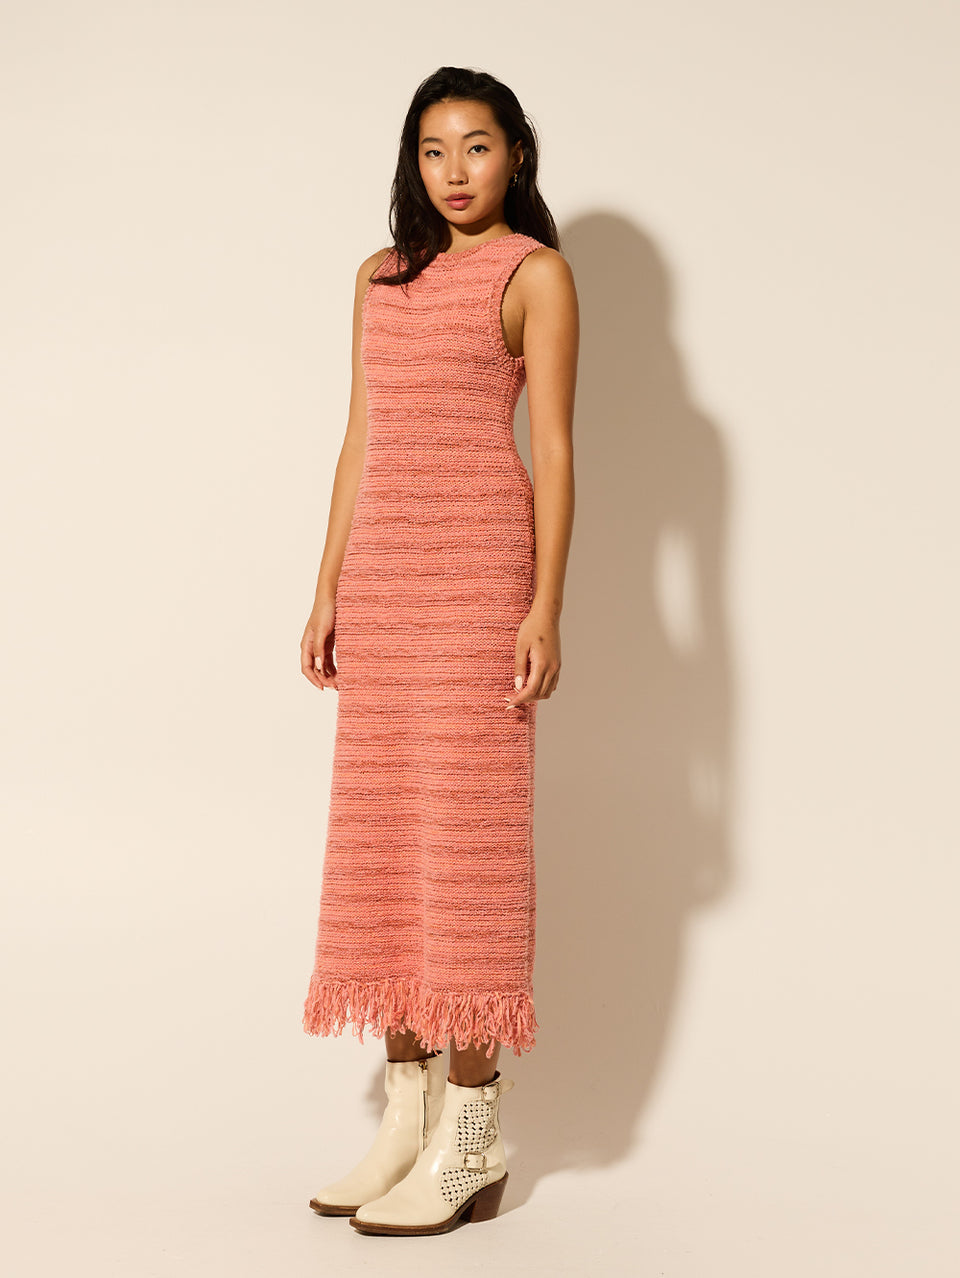 Luciana Knit Midi Dress Pink KIVARI | Model wears pink knit midi dress side view